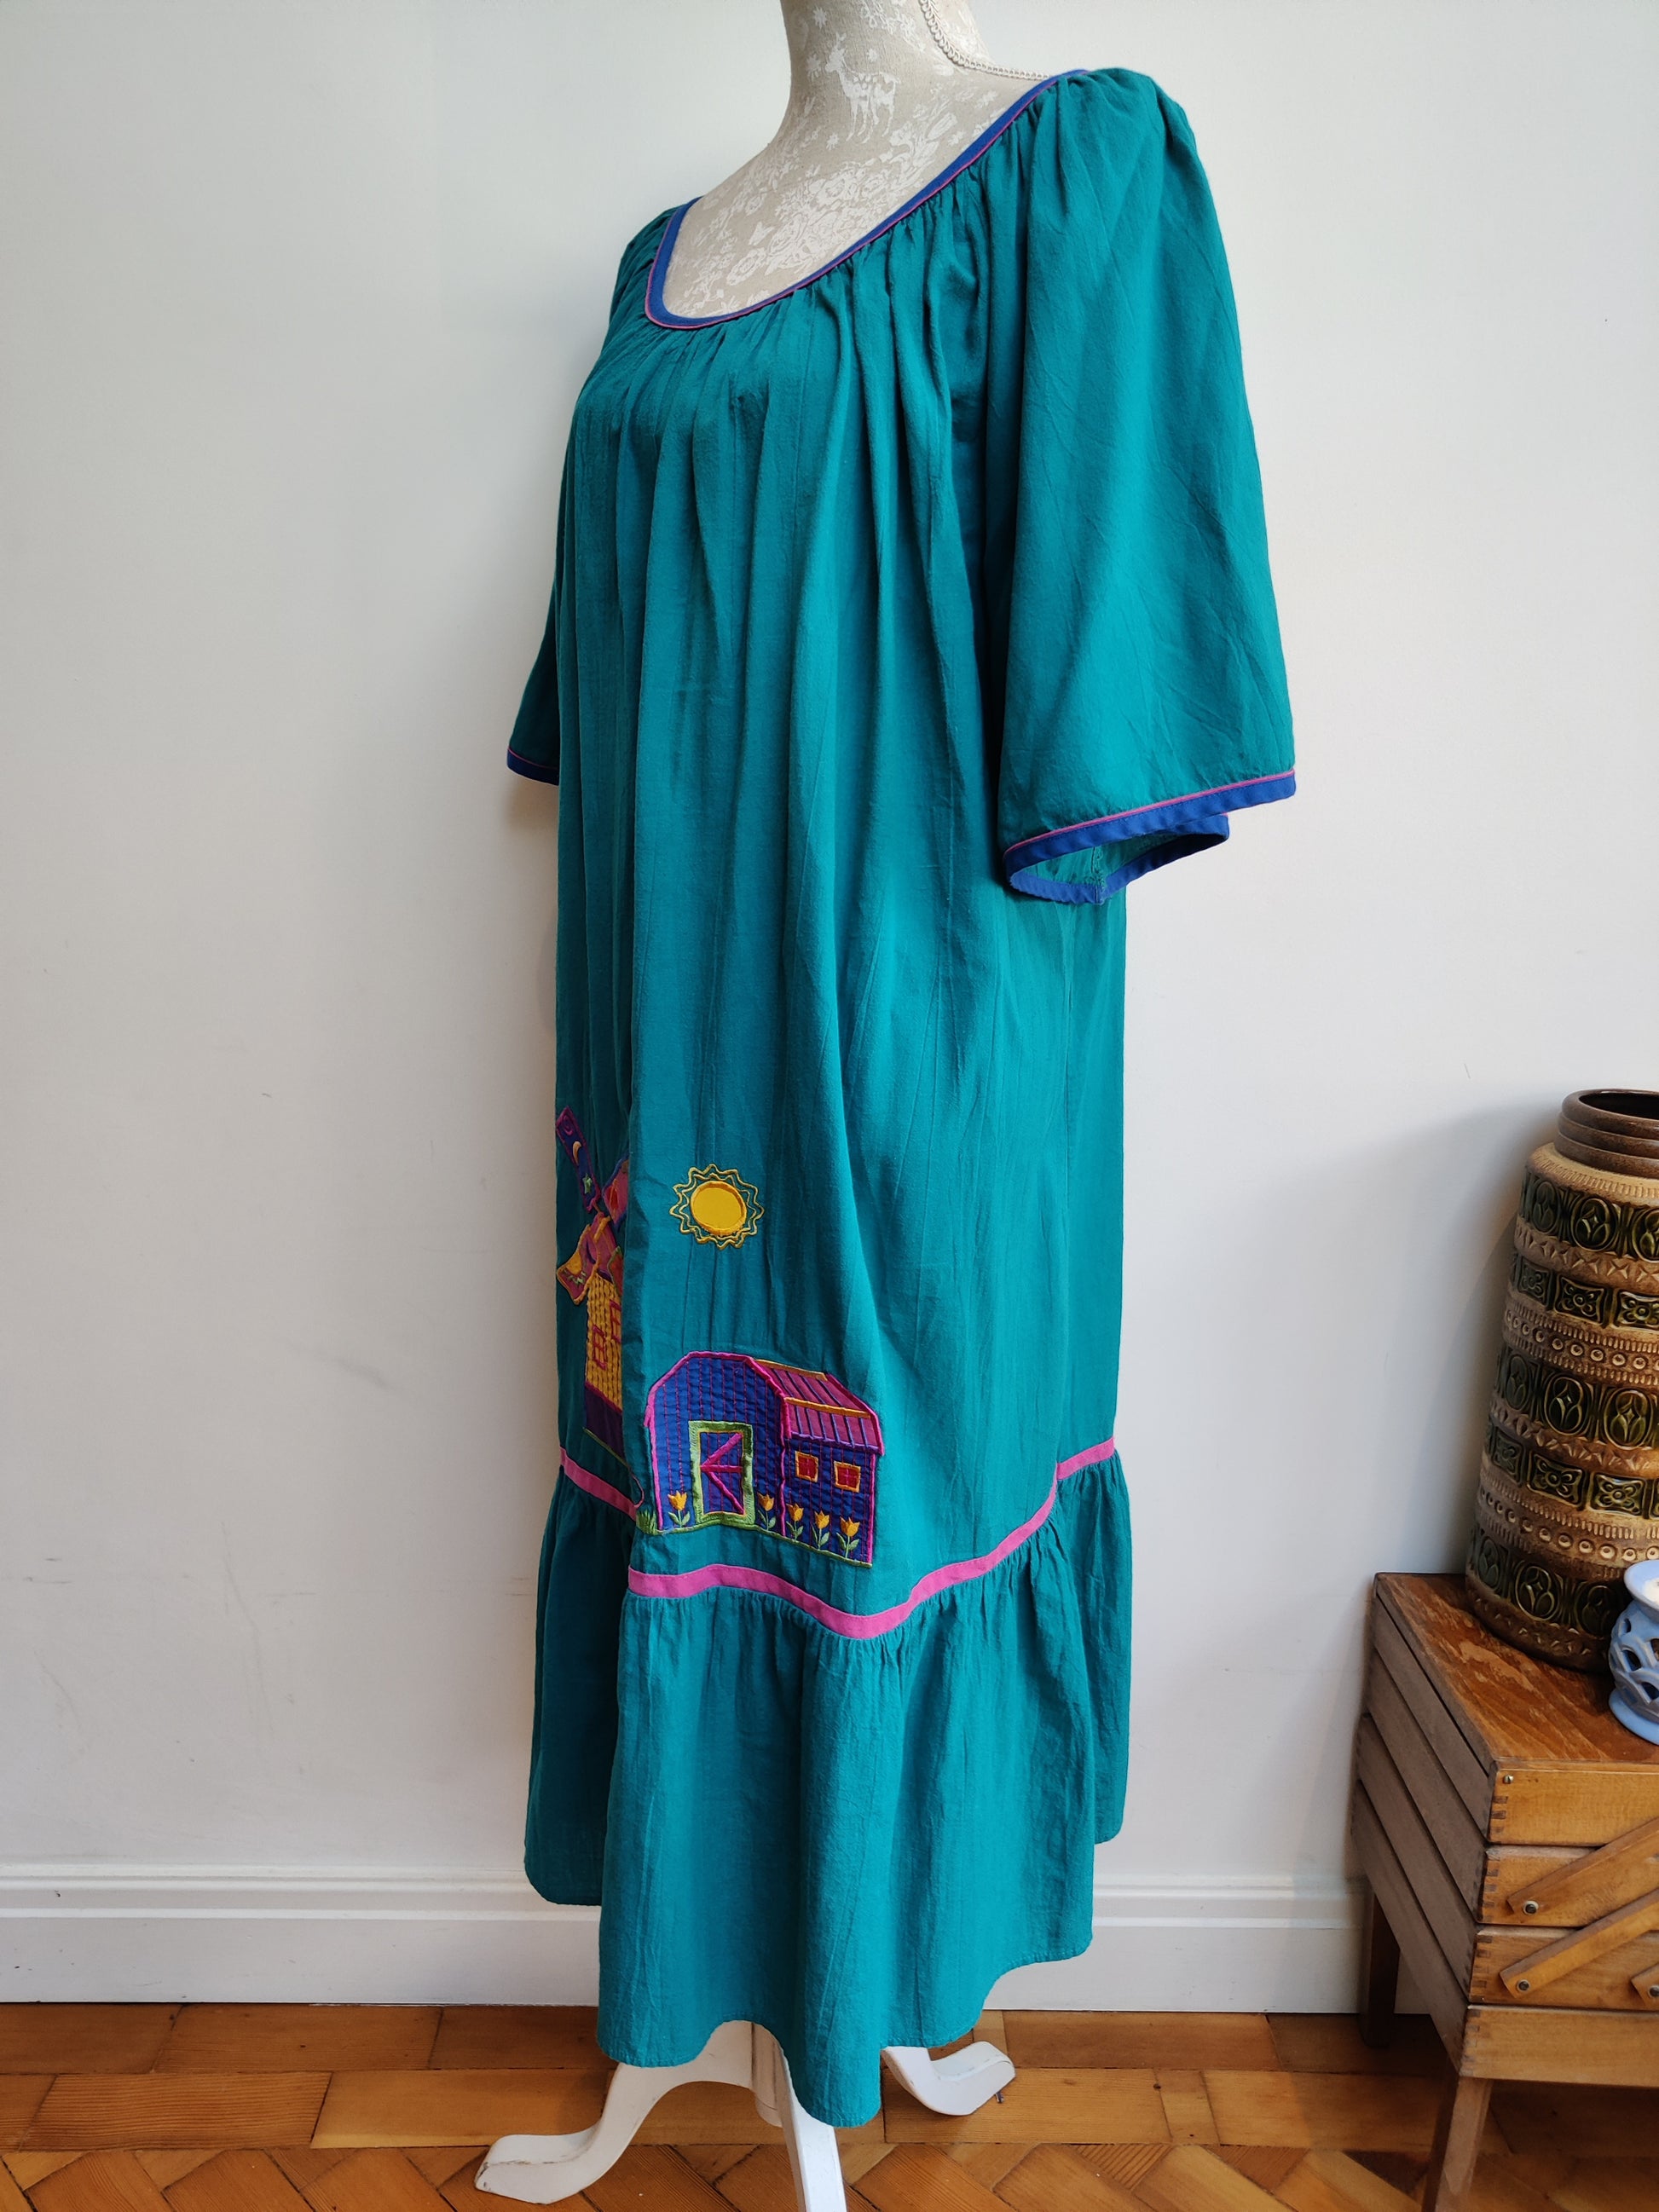 Size 16-22 vintage summer dress.